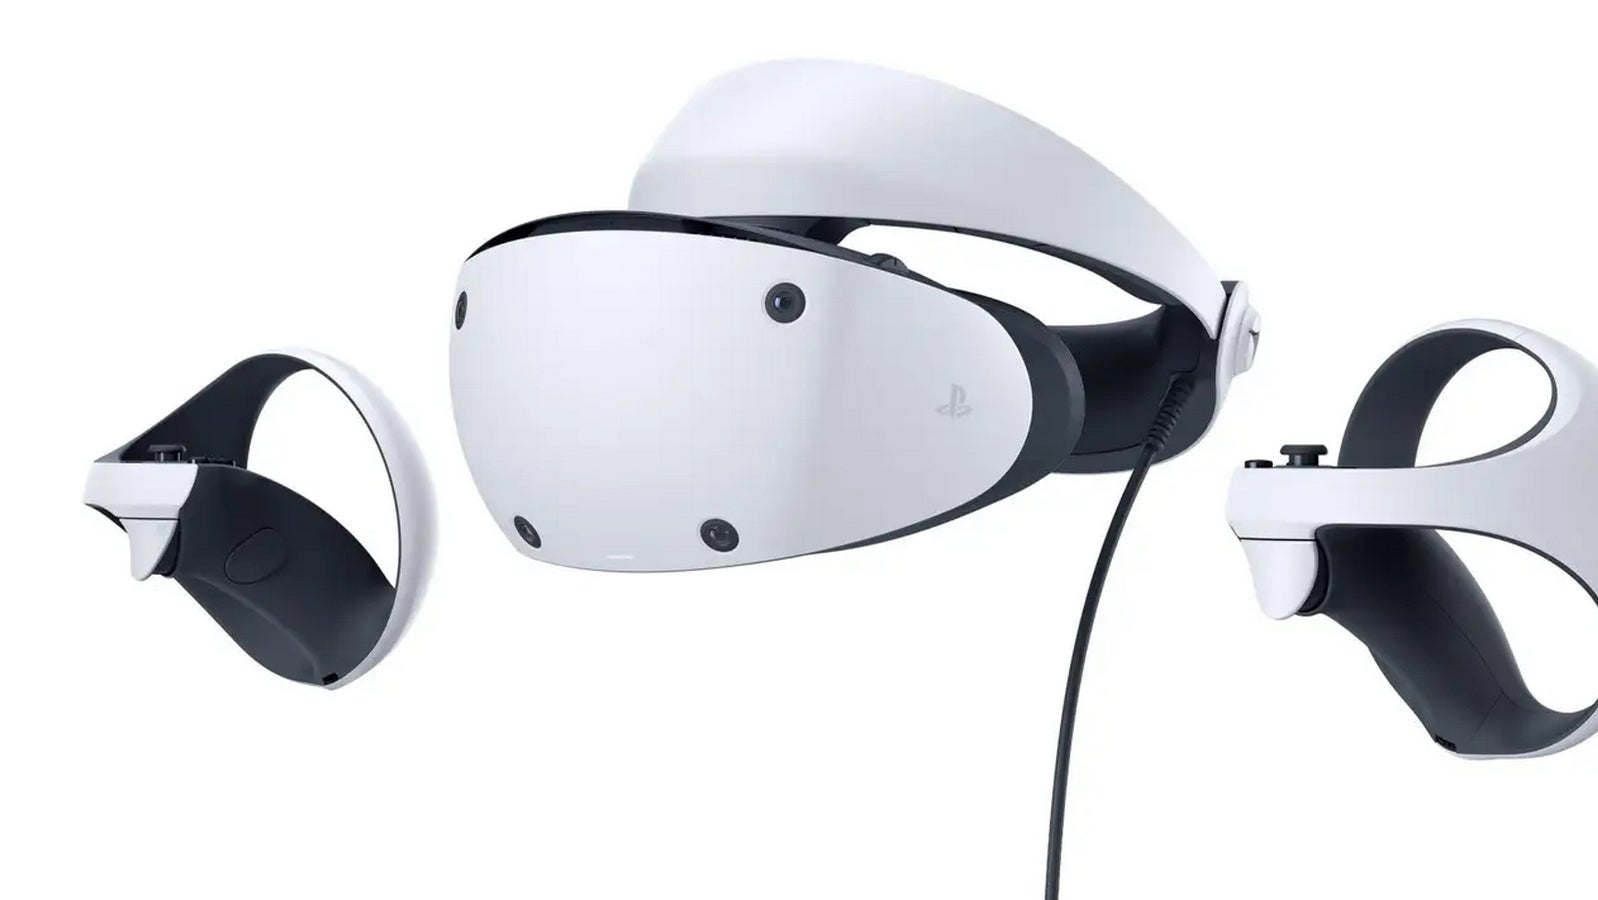 Bilder zu PlayStation VR2: So sieht das neue Headset aus - Ein erster Blick auf das finale Design